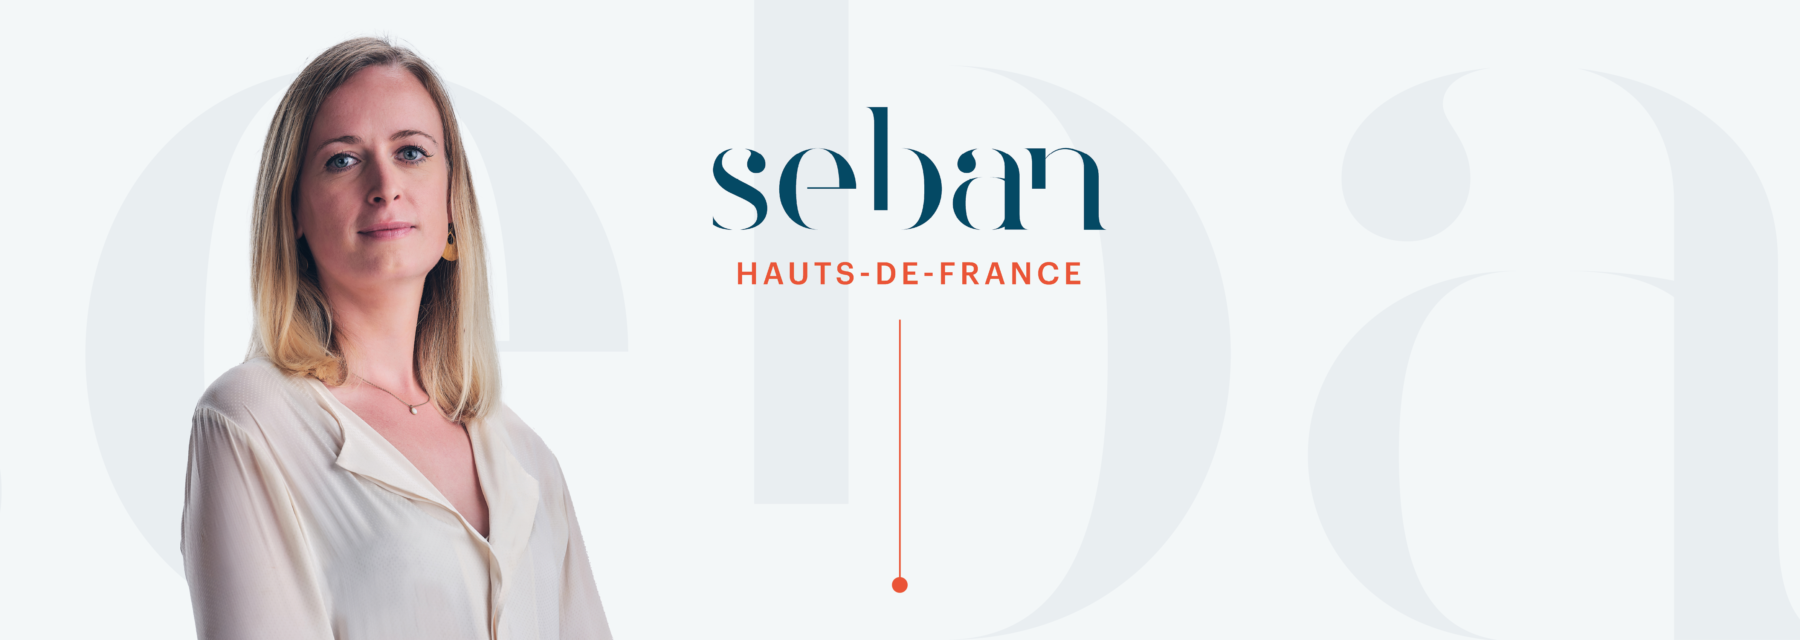 SEBAN HAUTS-DE-FRANCE